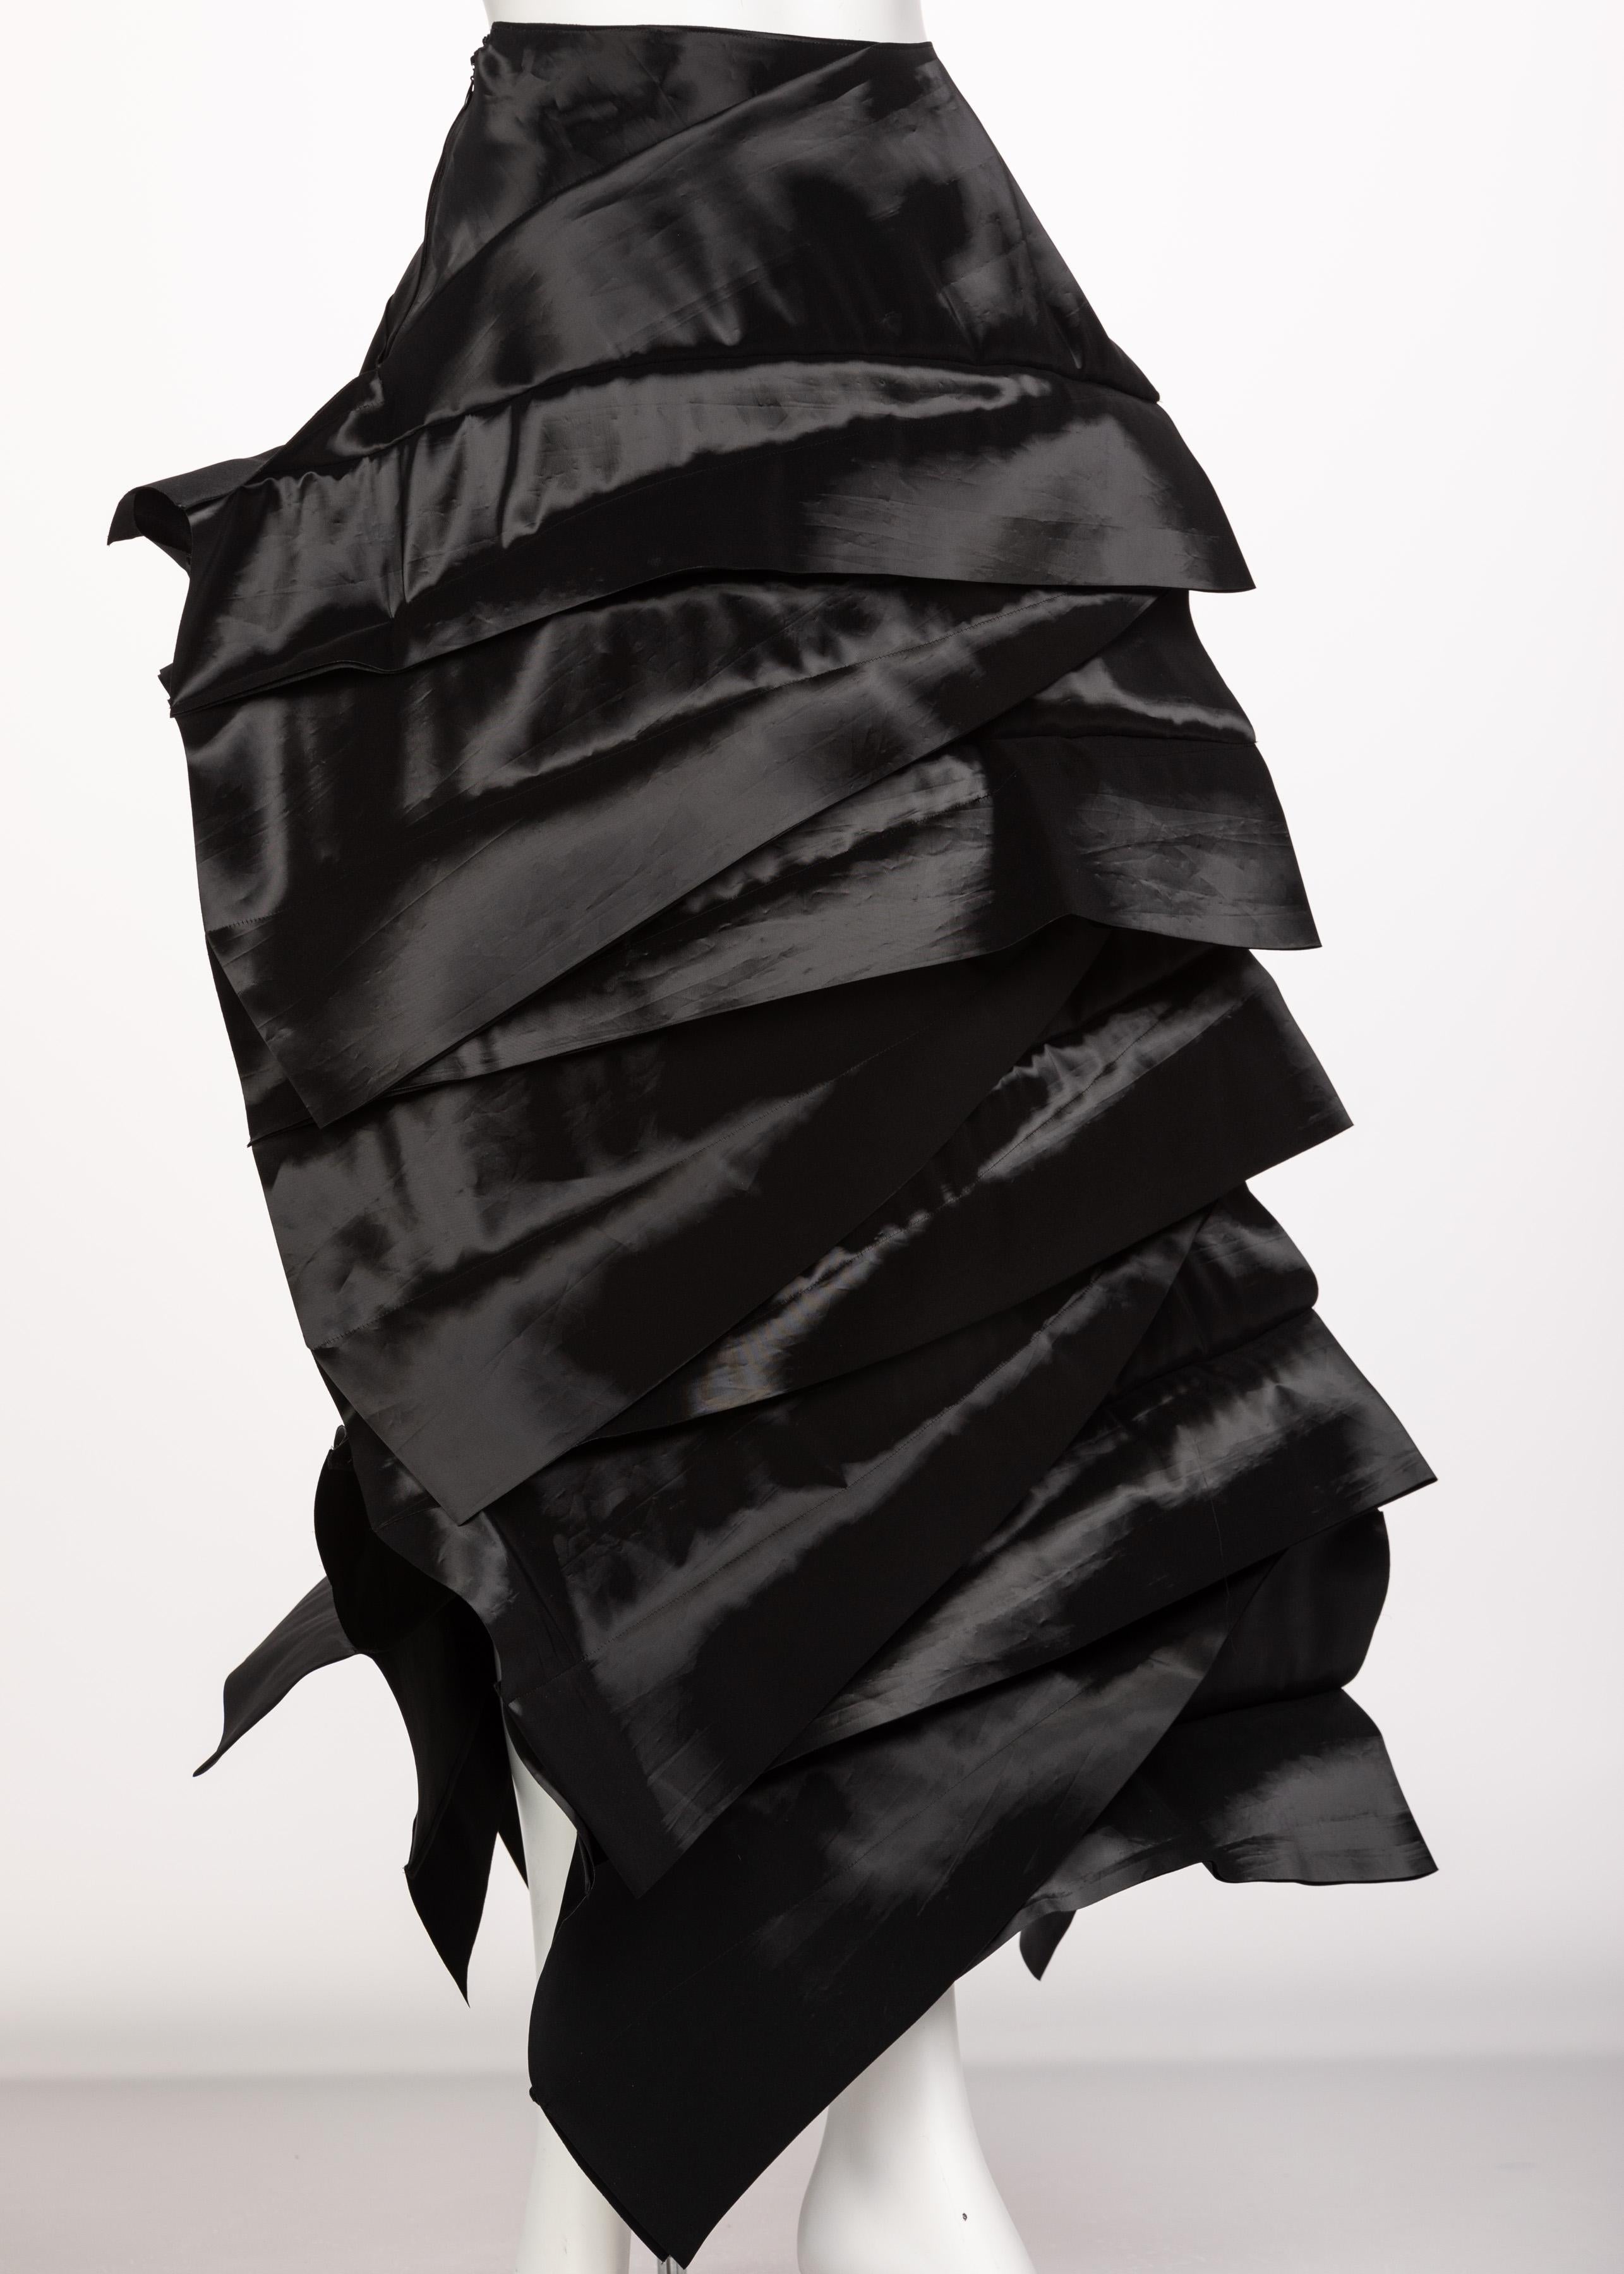 Women's Junya Watanabe Comme des Garcons Sculptural Black Avant Garde Skirt